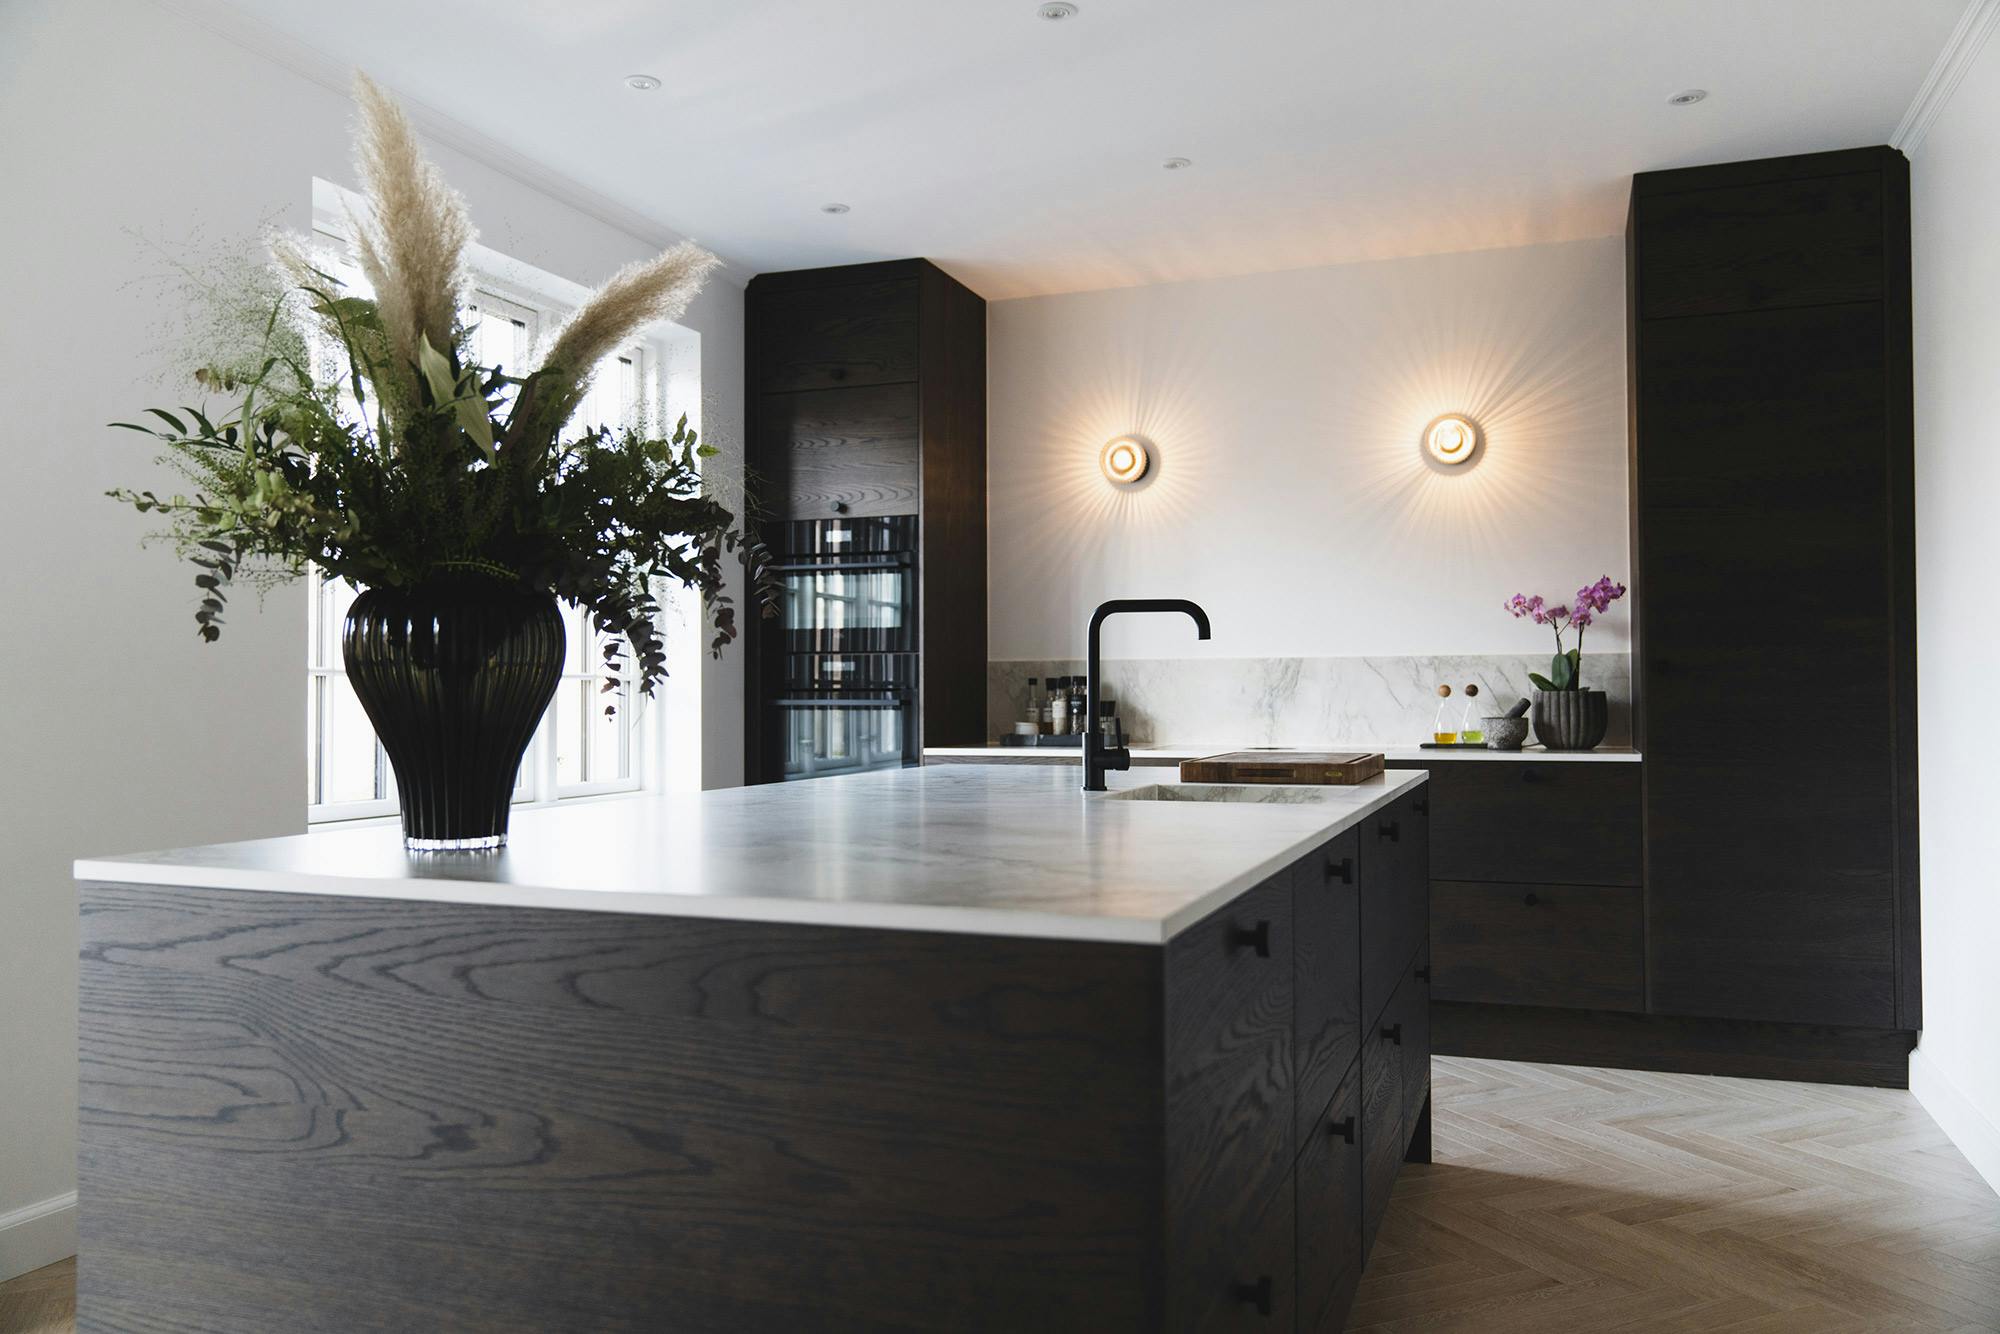 Numéro d'image 34 de la section actuelle de A classic yet minimalist kitchen complemented by DKTN’s elegance and functionality de Cosentino France